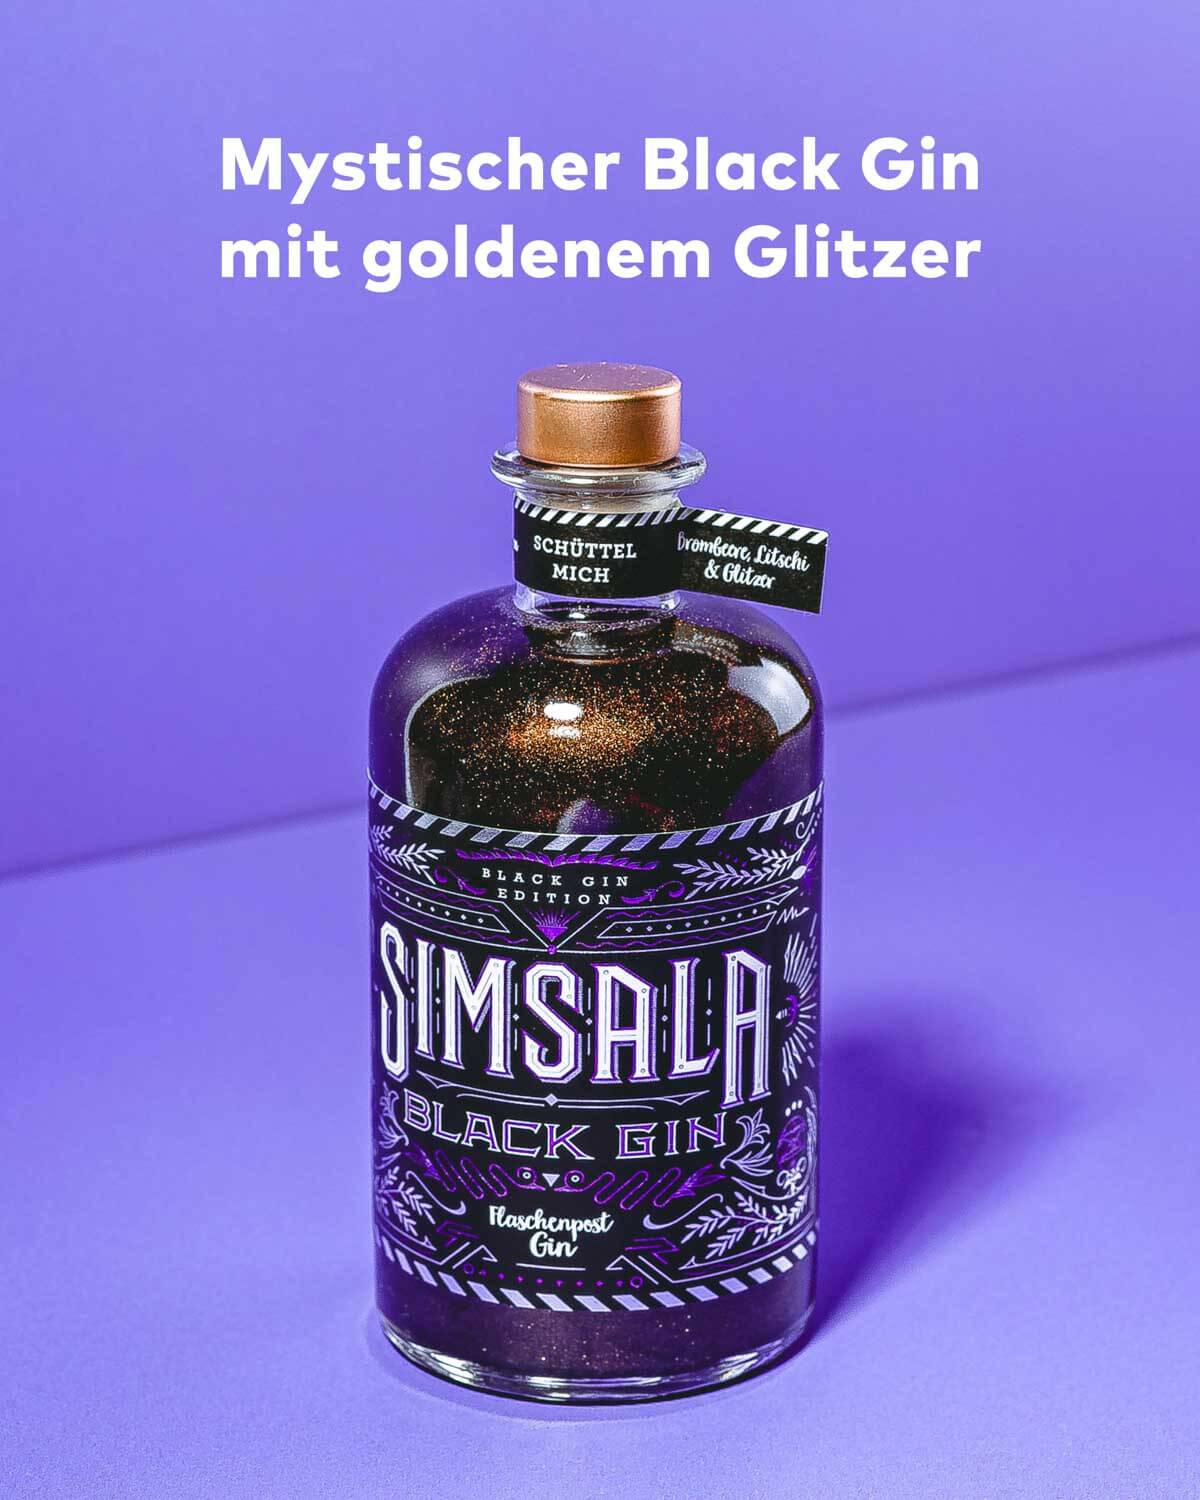 Starter Set mit Tasse - Simsala Black Gin mit Glitzer (Brombeere & Litschi)